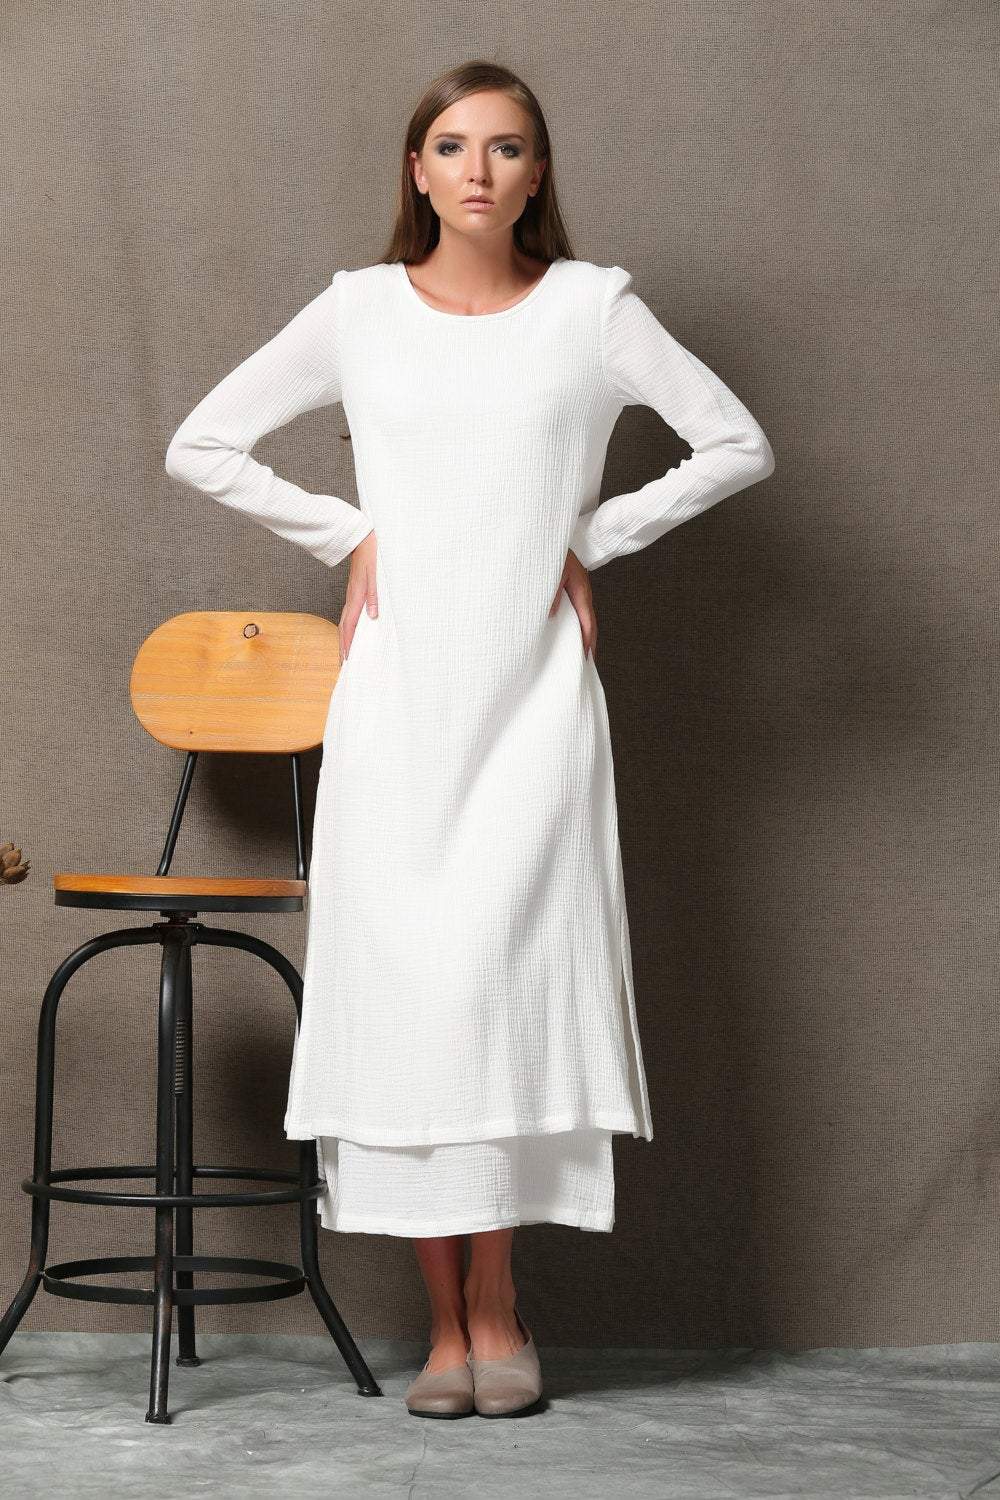 Cotton White Dress, Women Cotton Dress, Maxi Cotton Dress, Long